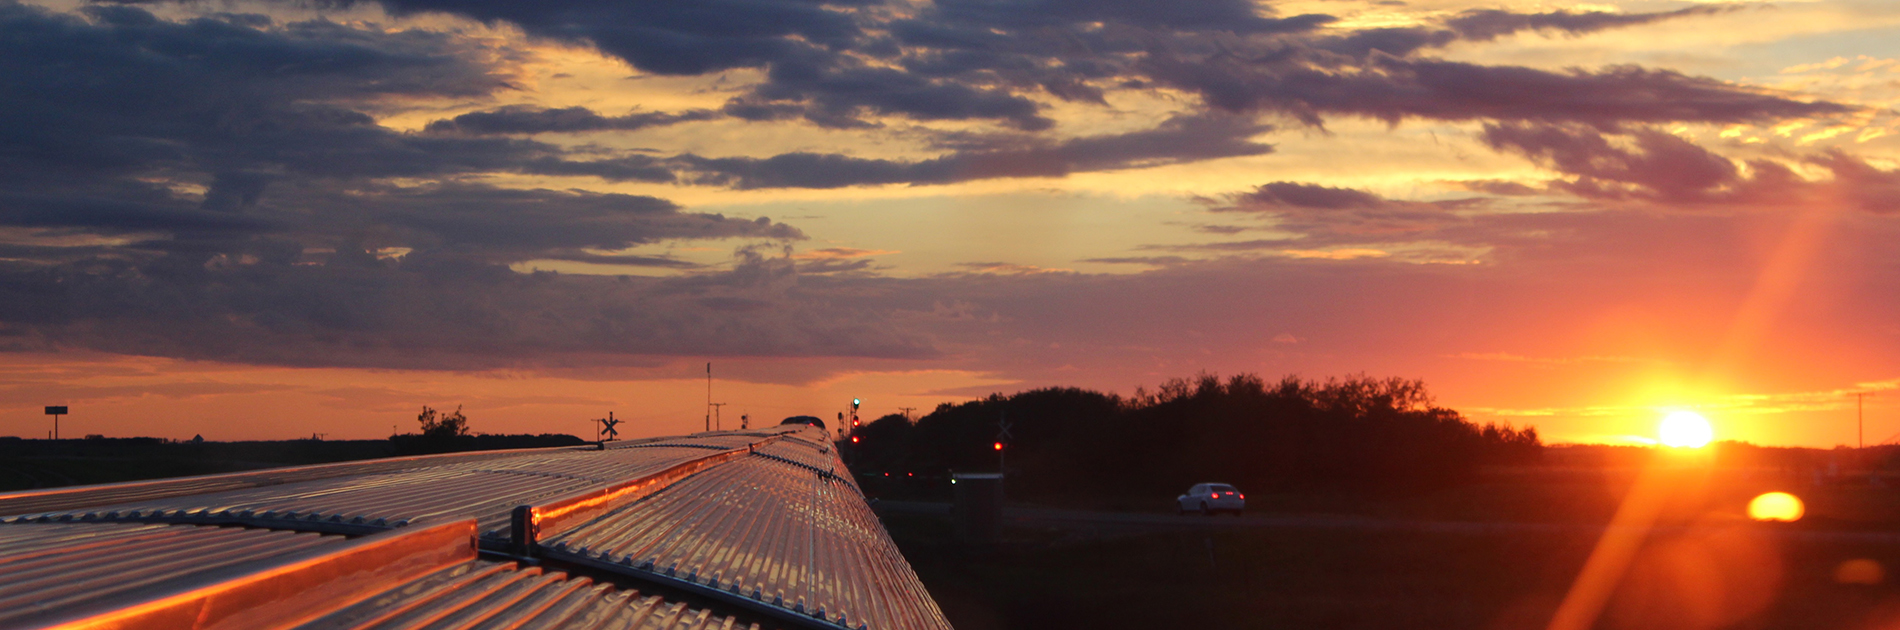 sunset, Saskatchewan, train